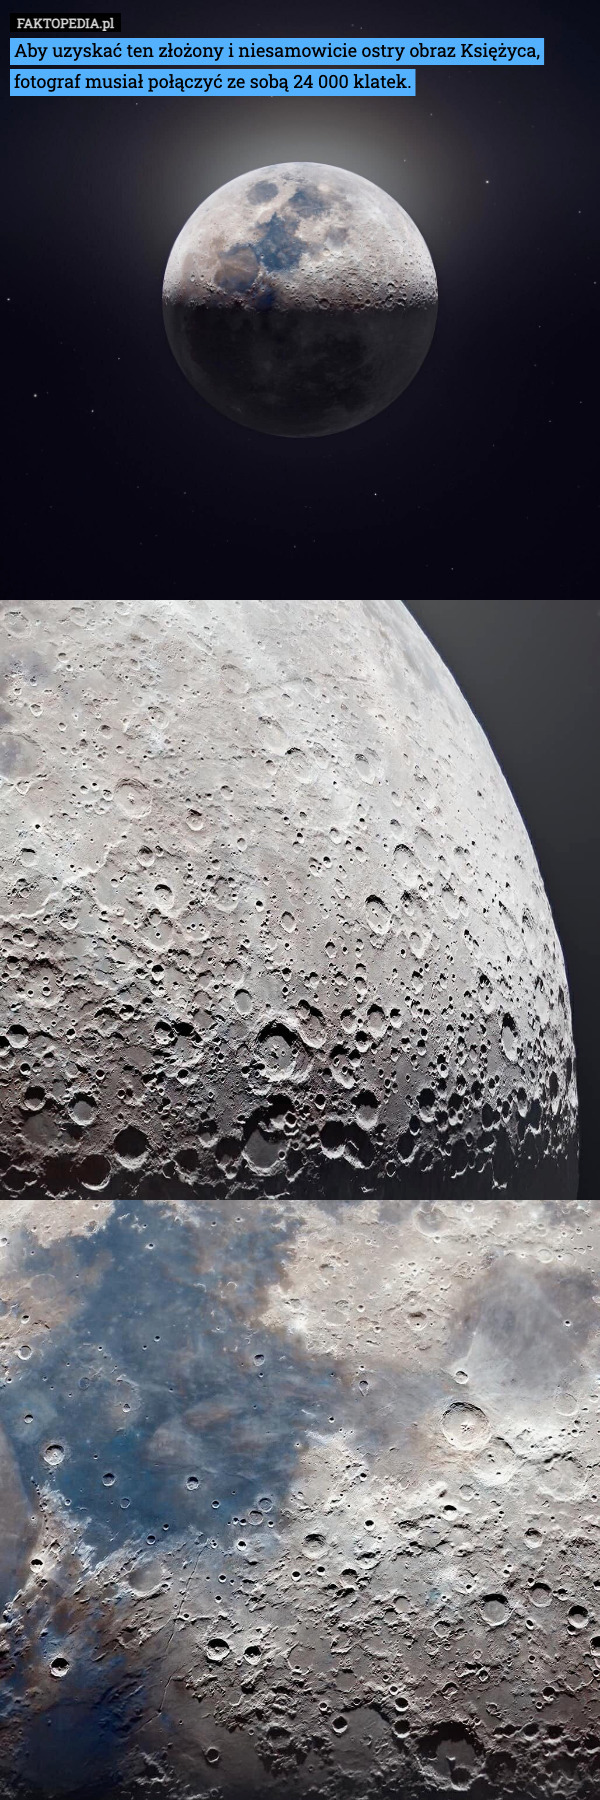 Aby uzyskać ten złożony i niesamowicie ostry obraz Księżyca, fotograf musiał połączyć ze sobą 24 000 klatek. 